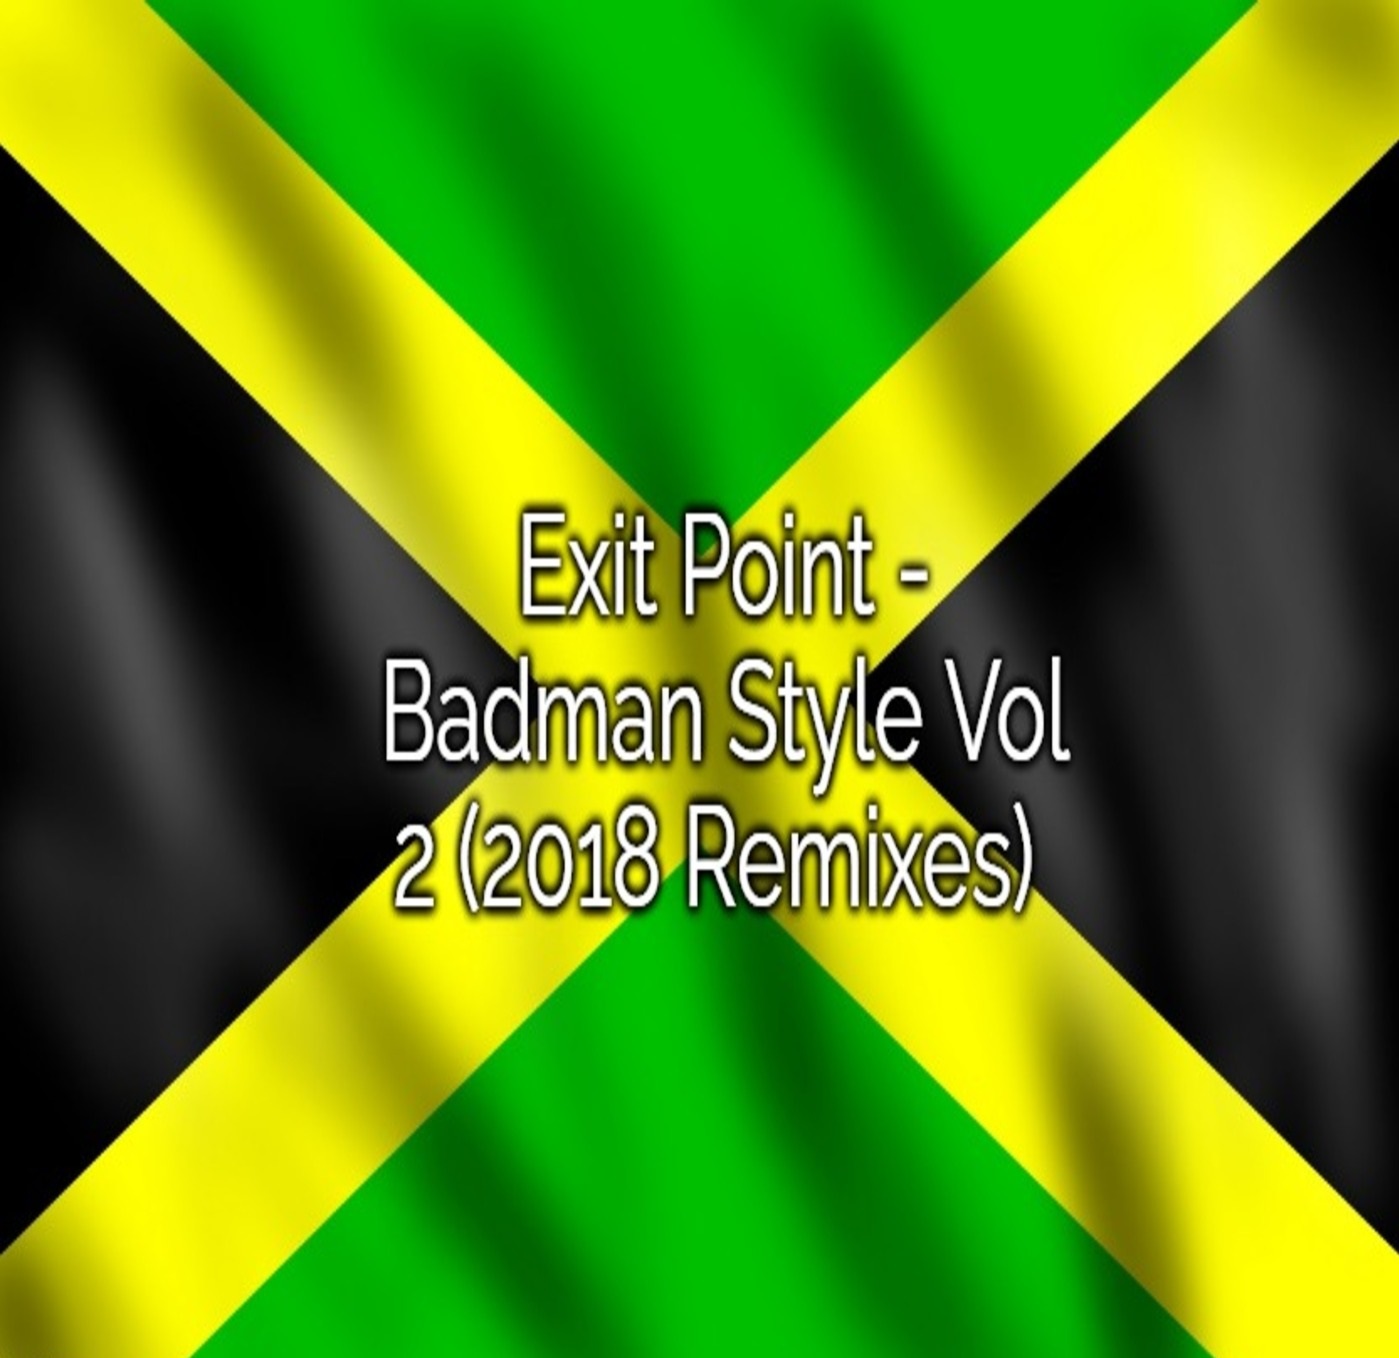 Exit Point - Badman Style Vol 2 (2018 Remixes) -> Jungle, Drum & Bass